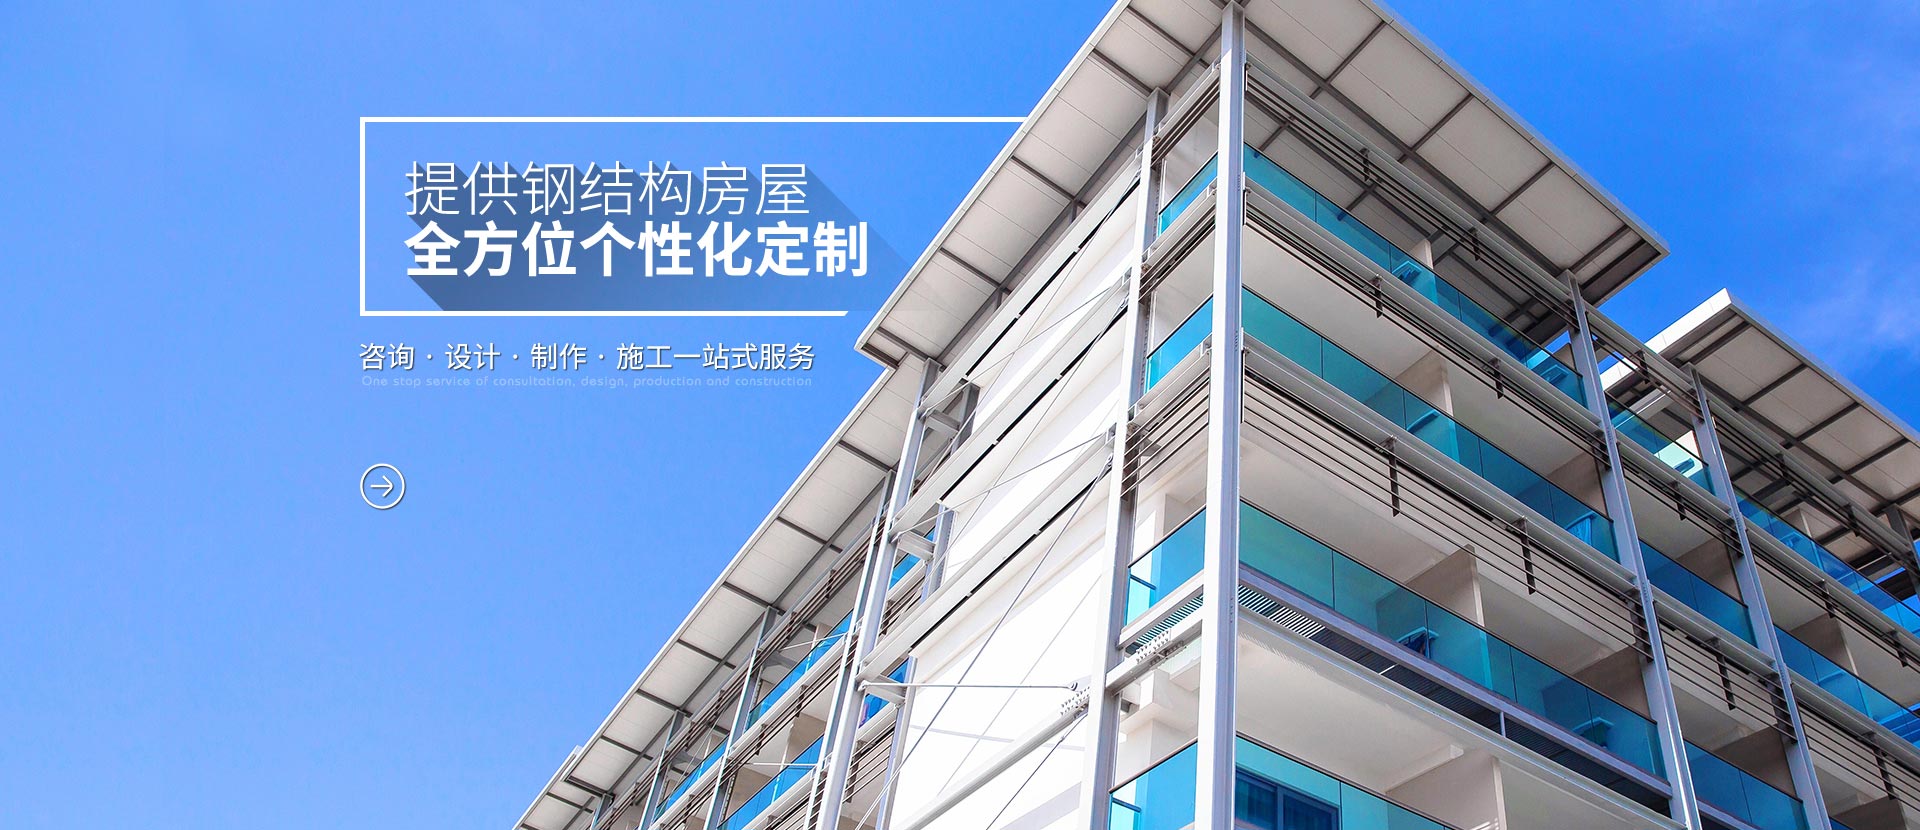 粤新松提供钢结构房屋全方位个性化定制